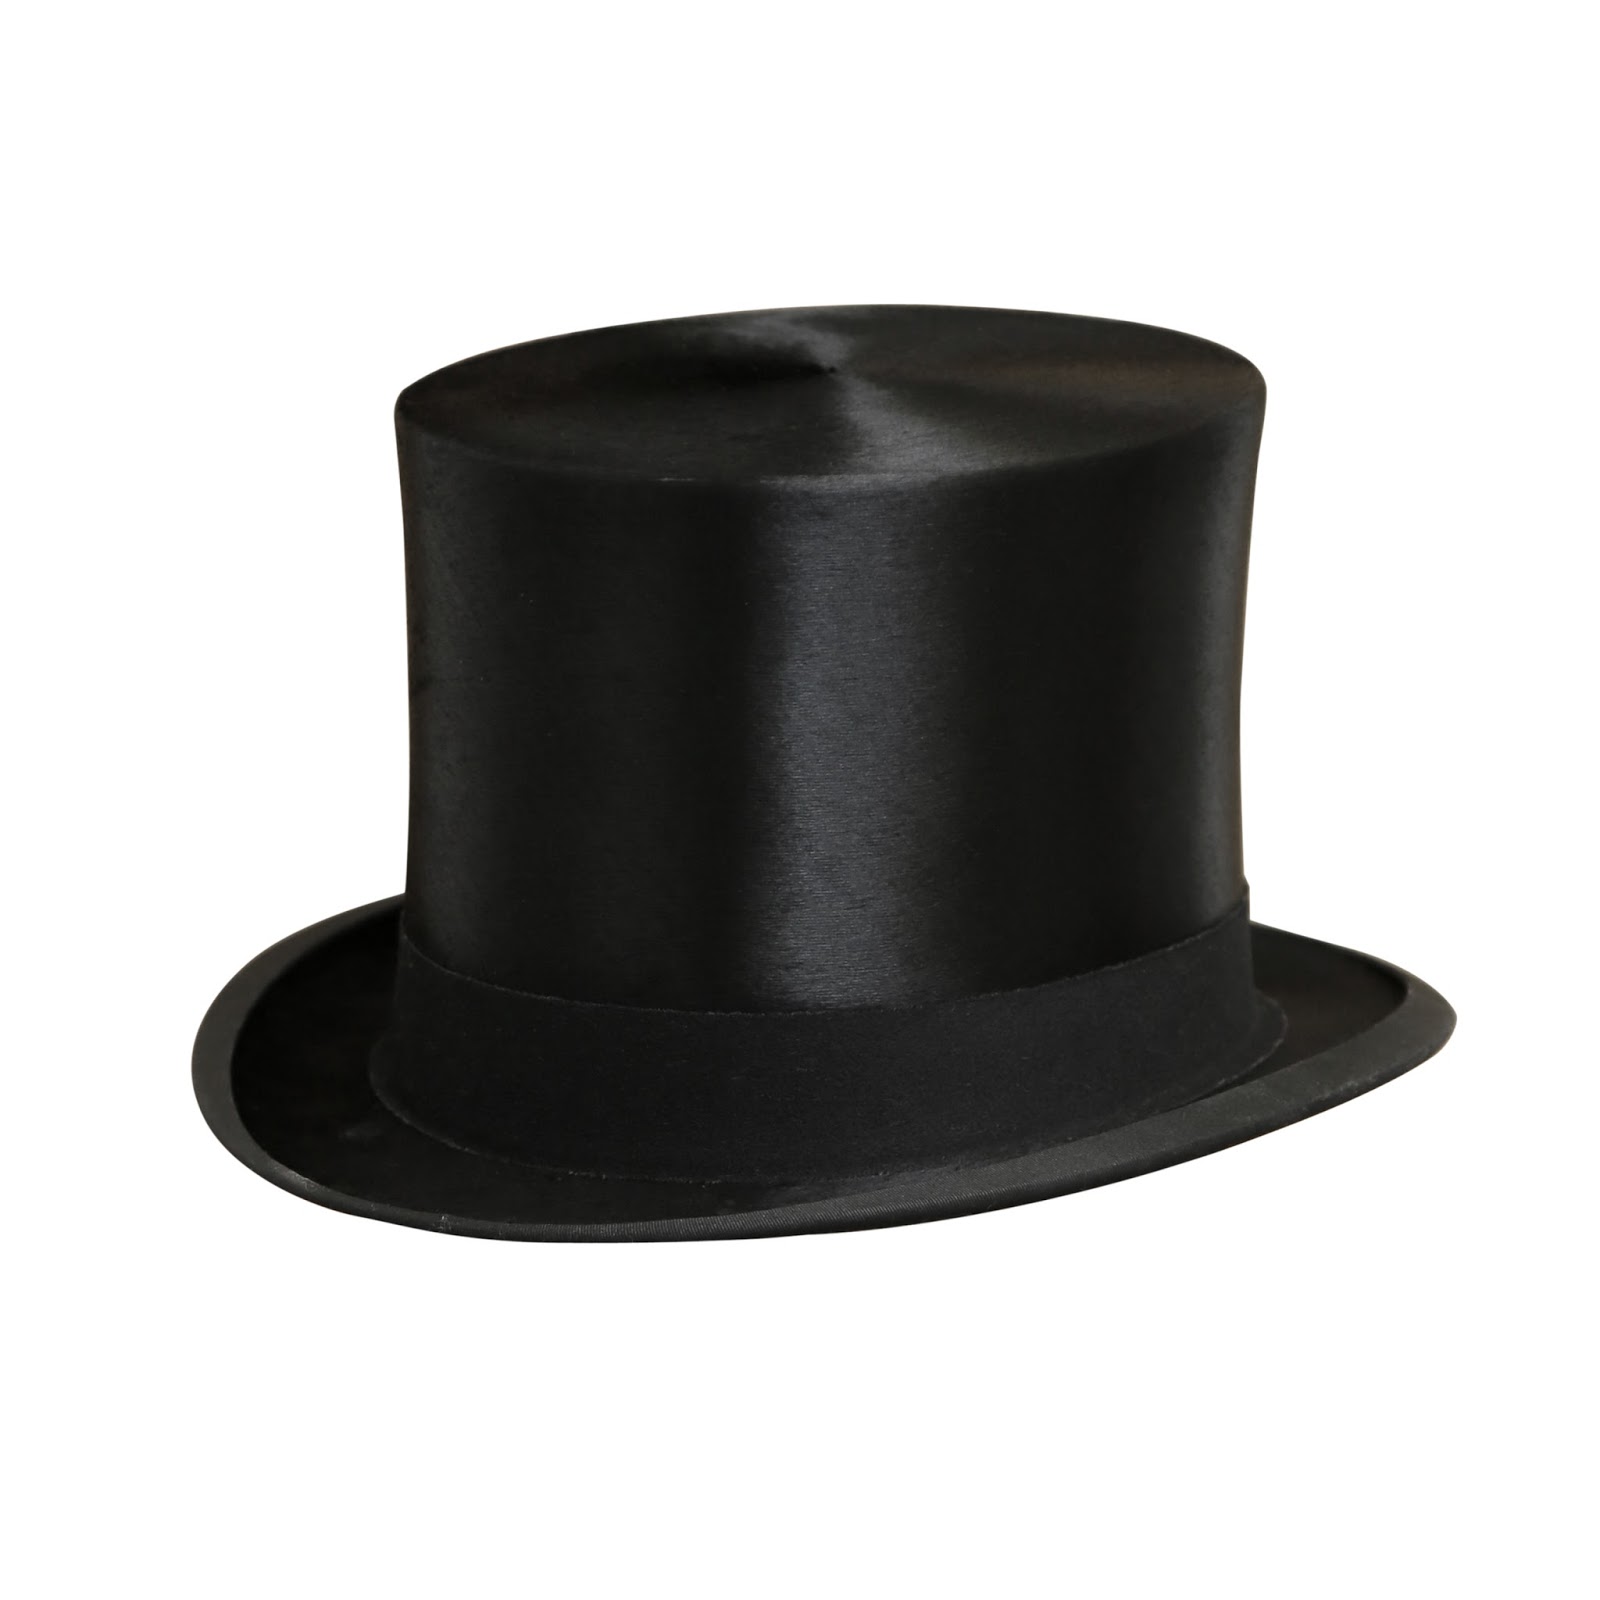 Удлиненный цилиндр. Шляпа цилиндр. Шляпа черная. Черный цилиндр. Черная мужская шляпа.